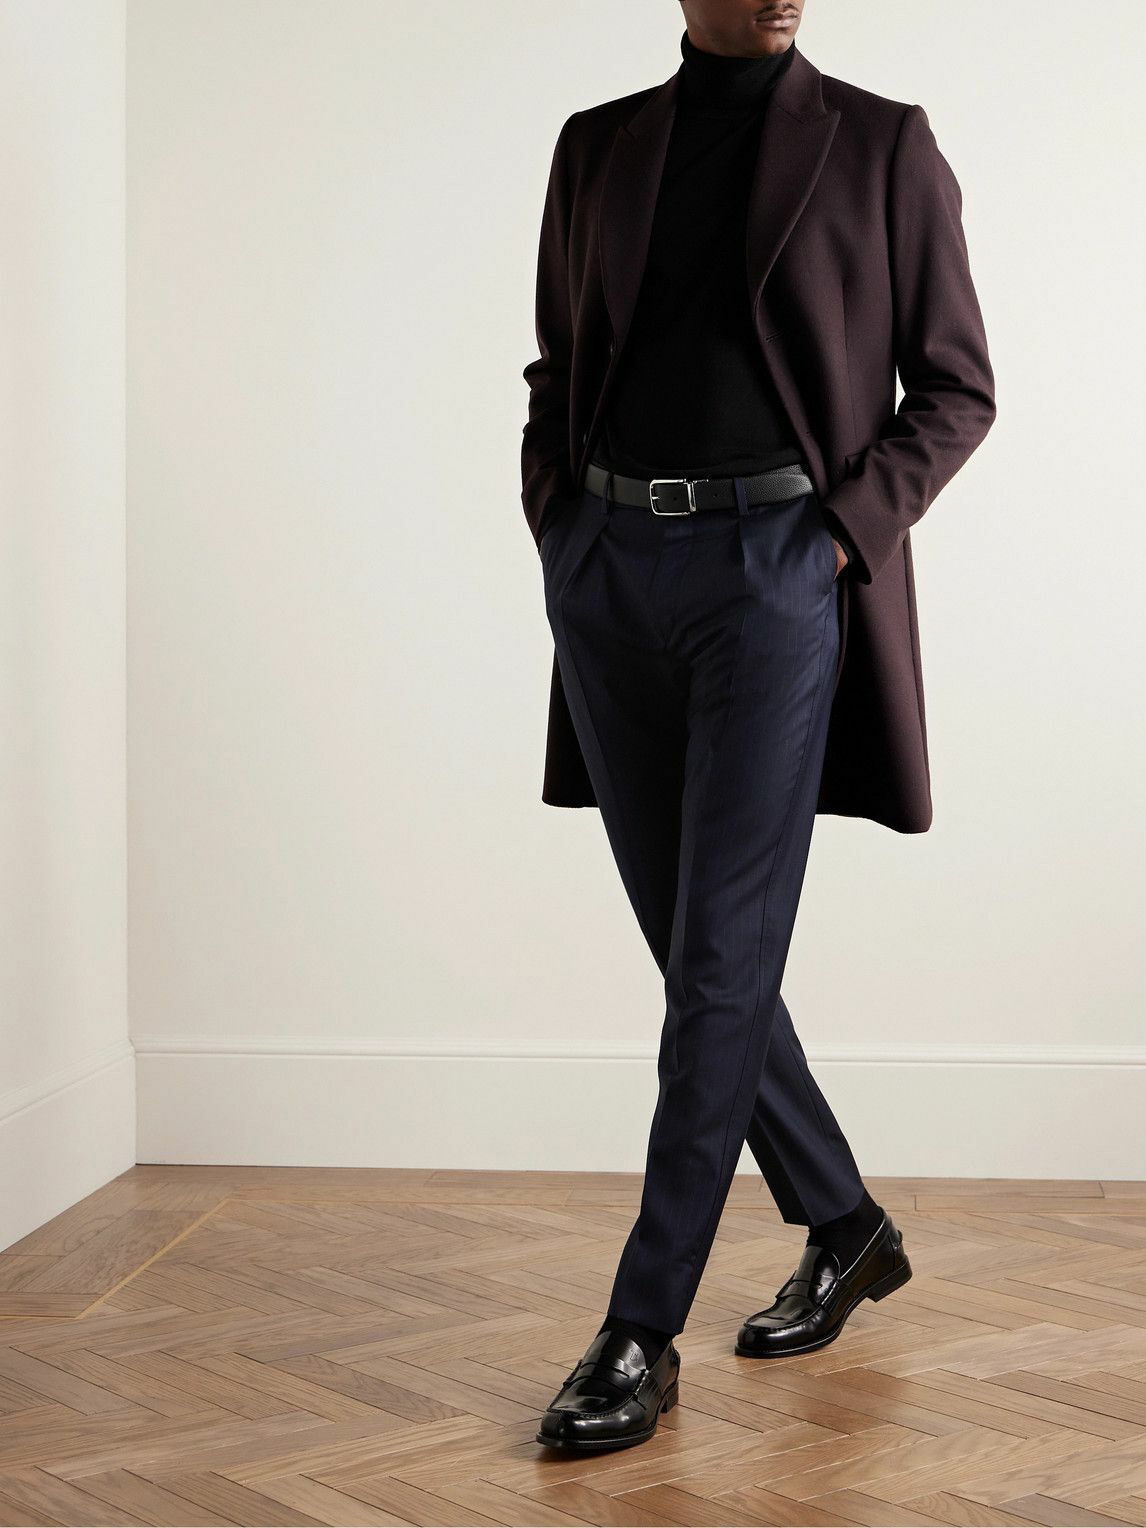 Designer Trousers For Men | Paul Smith